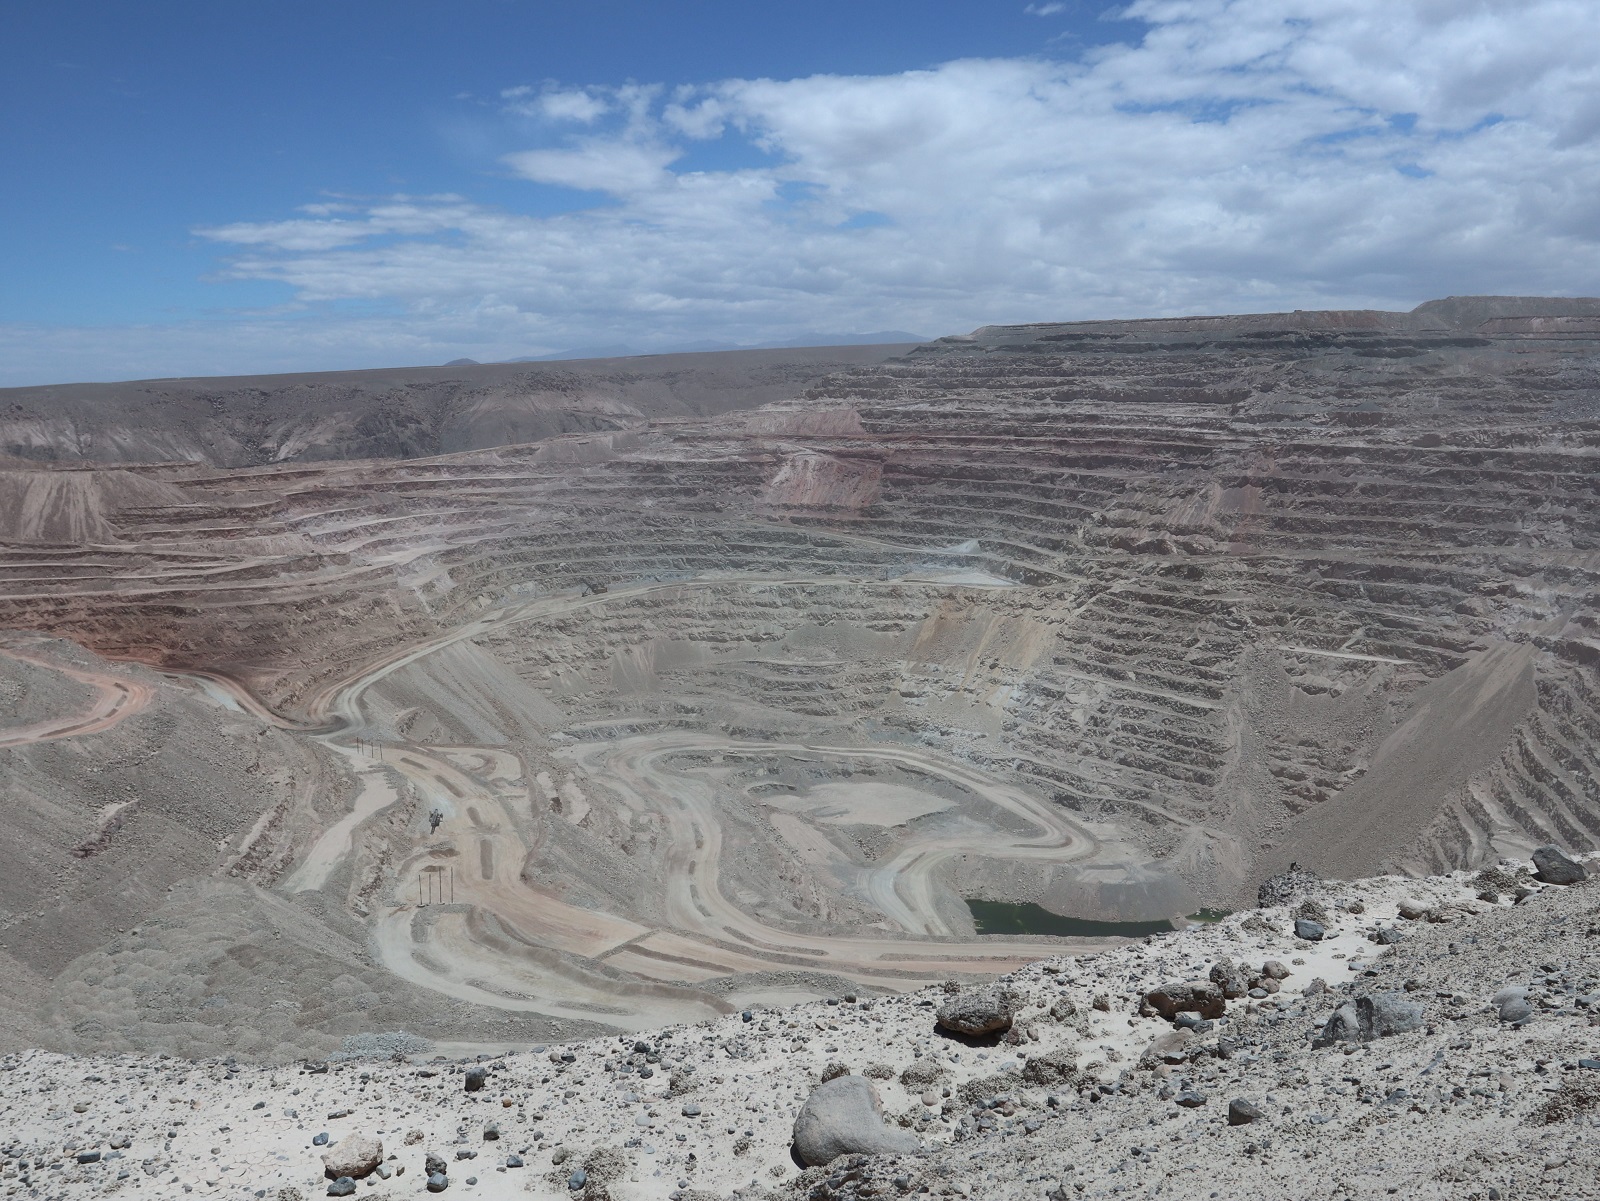 Comisión de Evaluación Ambiental de Tarapacá aprueba RCA Complementaria de Compañía Minera Cerro Colorado